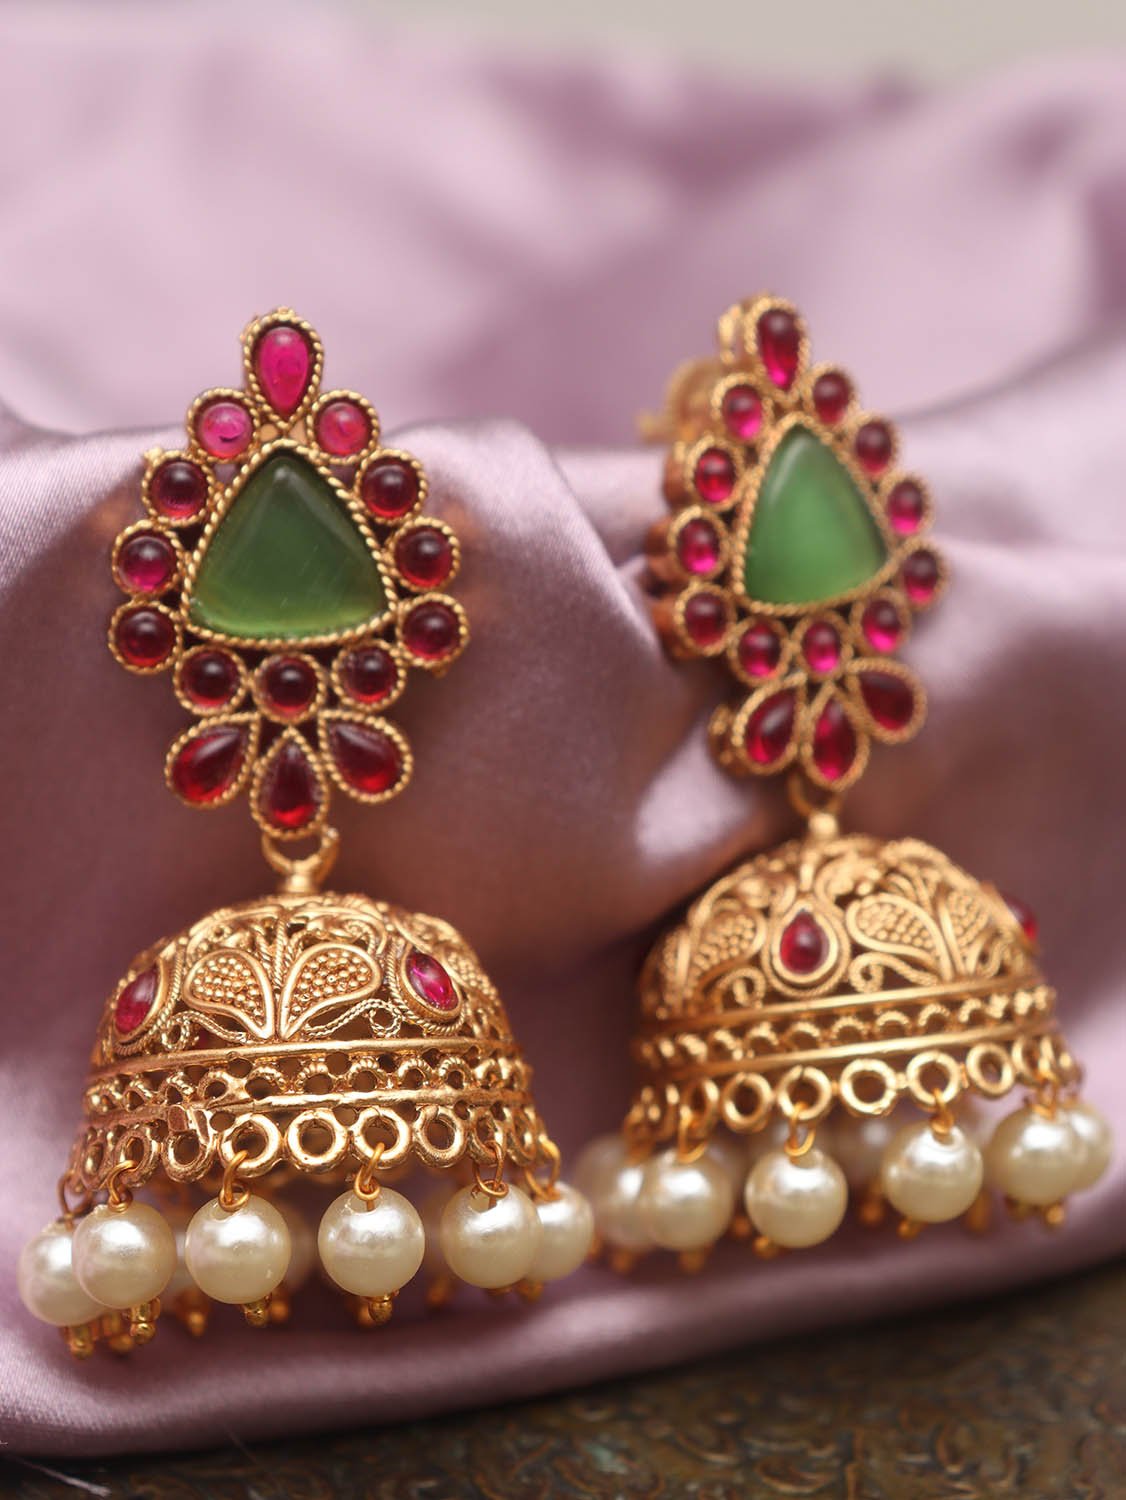 Ek Onkar Earrings Punjabi, Sikh, Khalsa handmade 22K gold plated gift item  | eBay